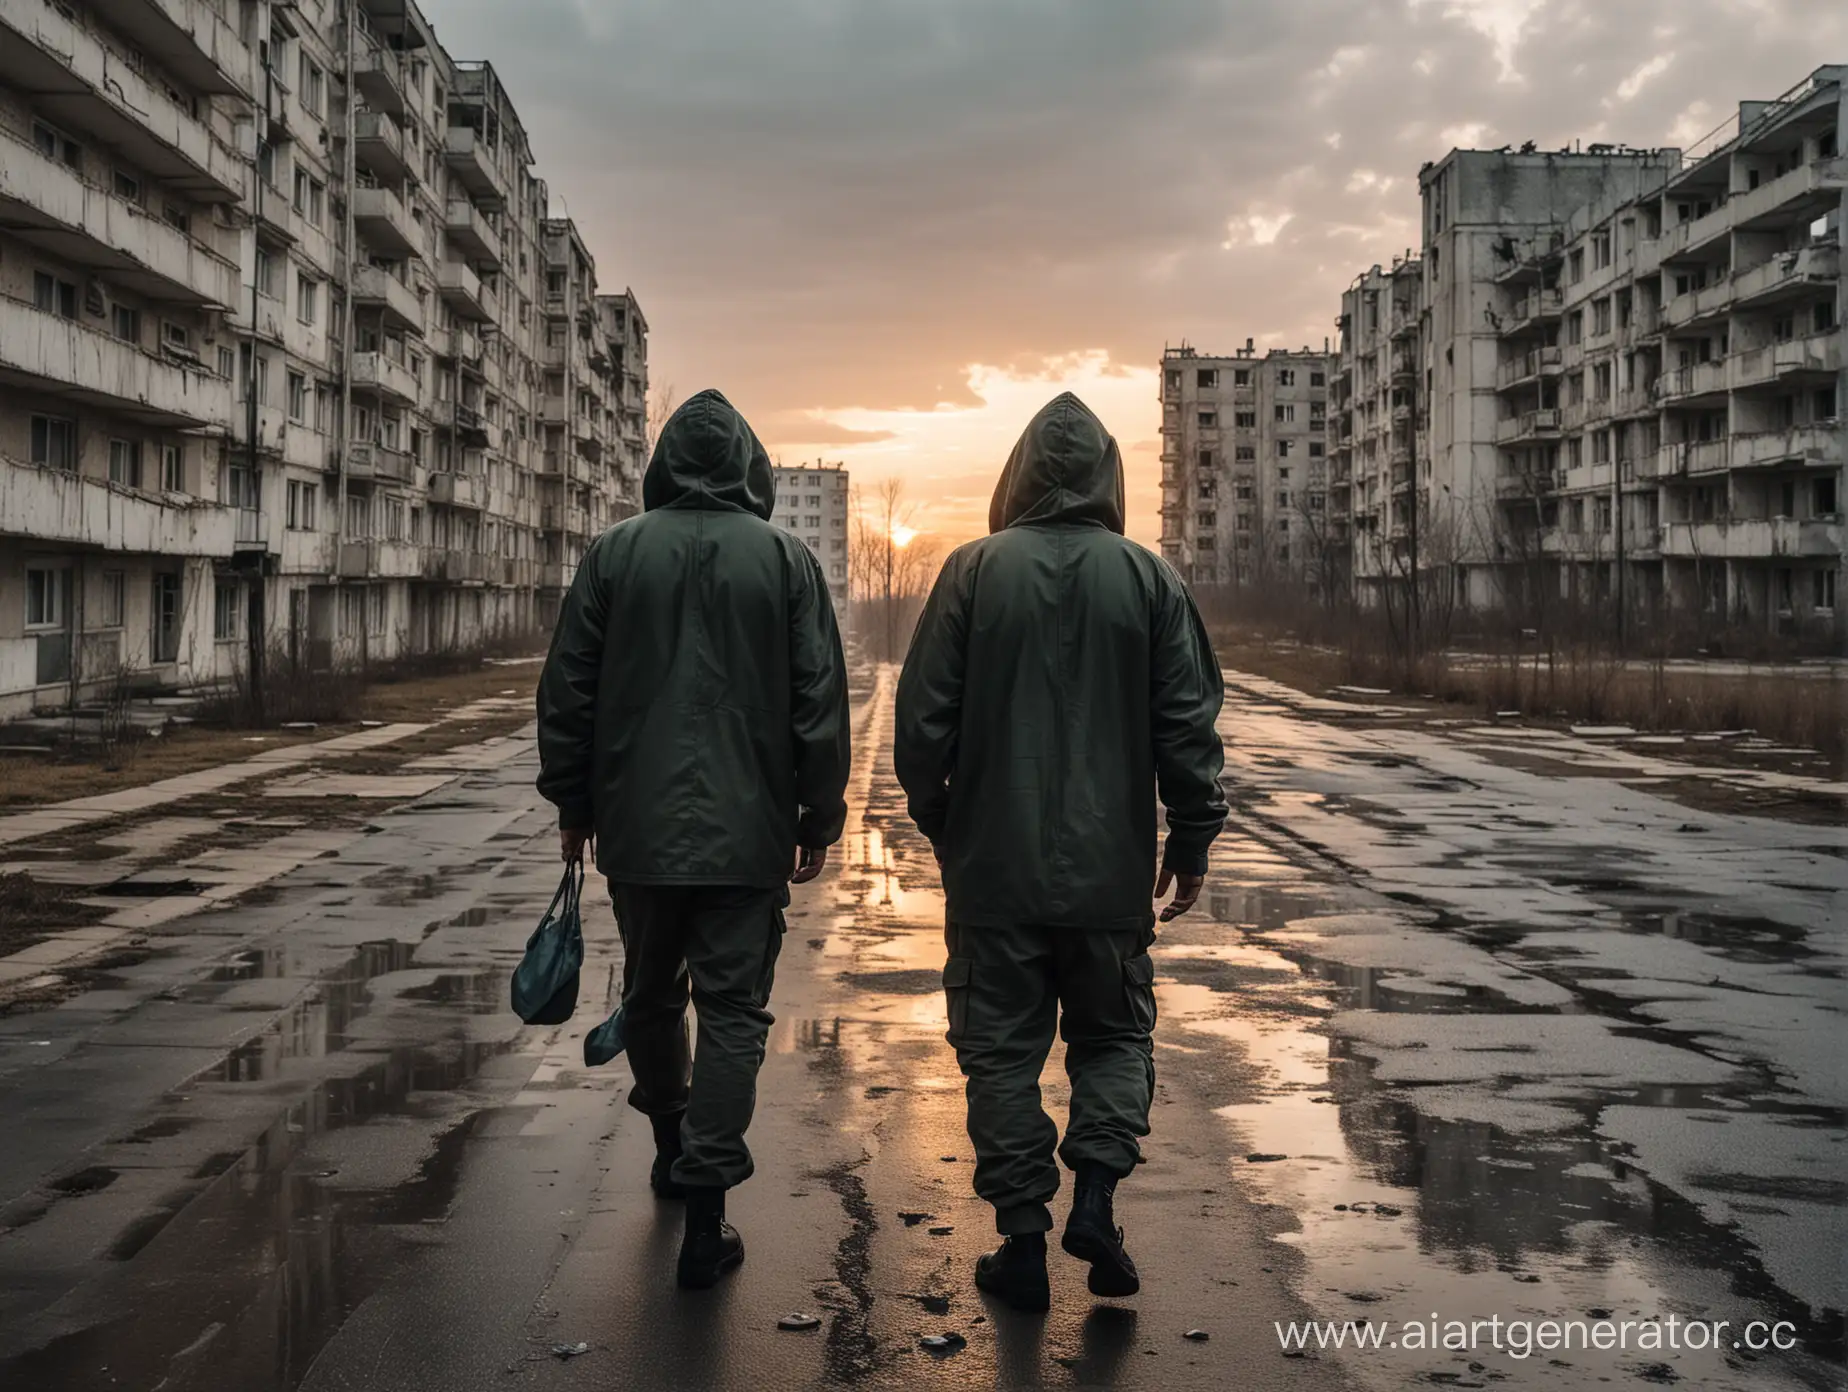 Два военных сталкера в капюшонах идут по улице среди многоквартирных домов города Припять навстречу закату. Дождливая погода.